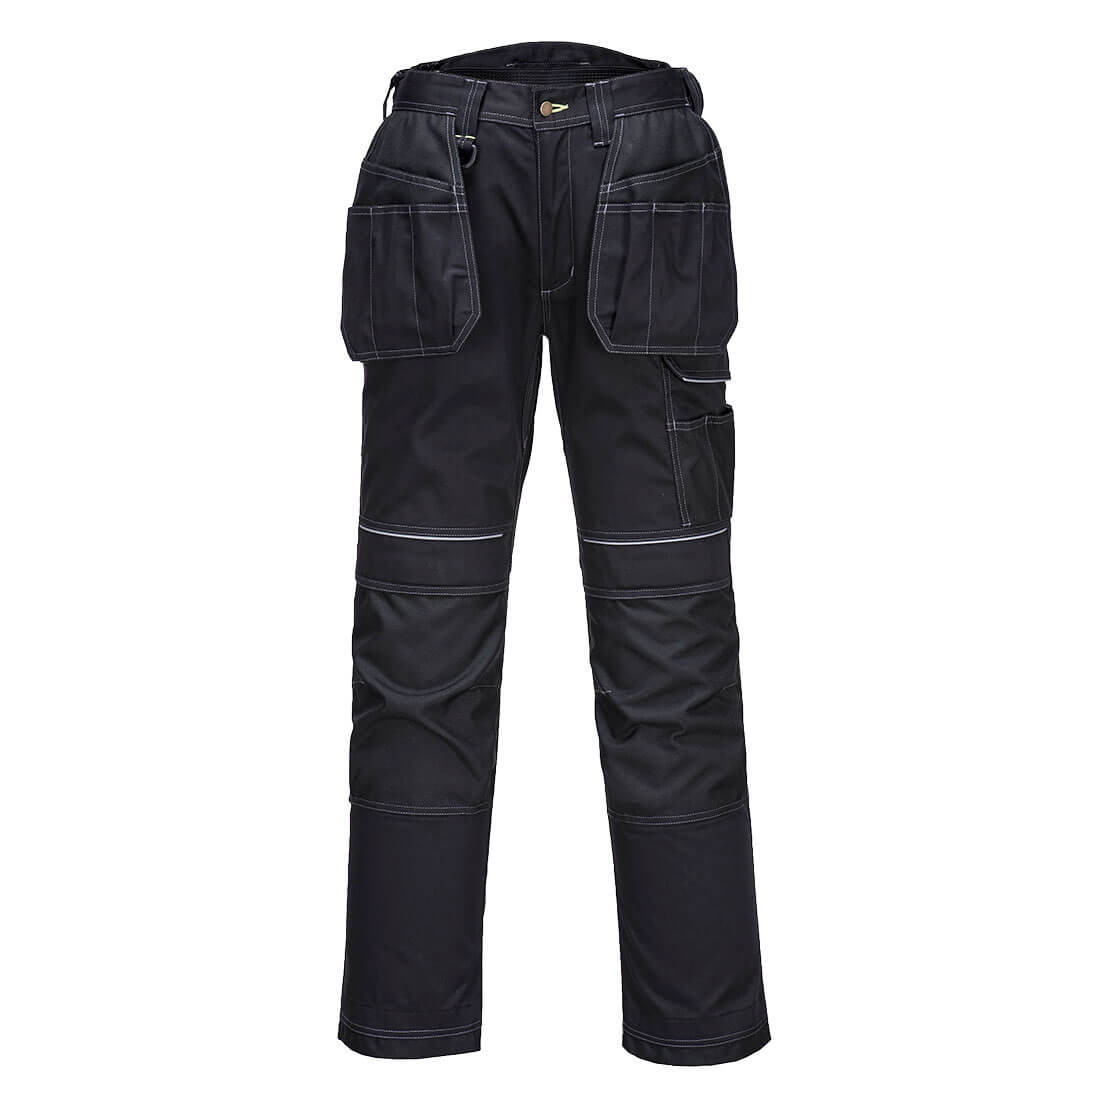 PW3 Pantaloni Holster invernali foderati - Abbigliamento di protezione